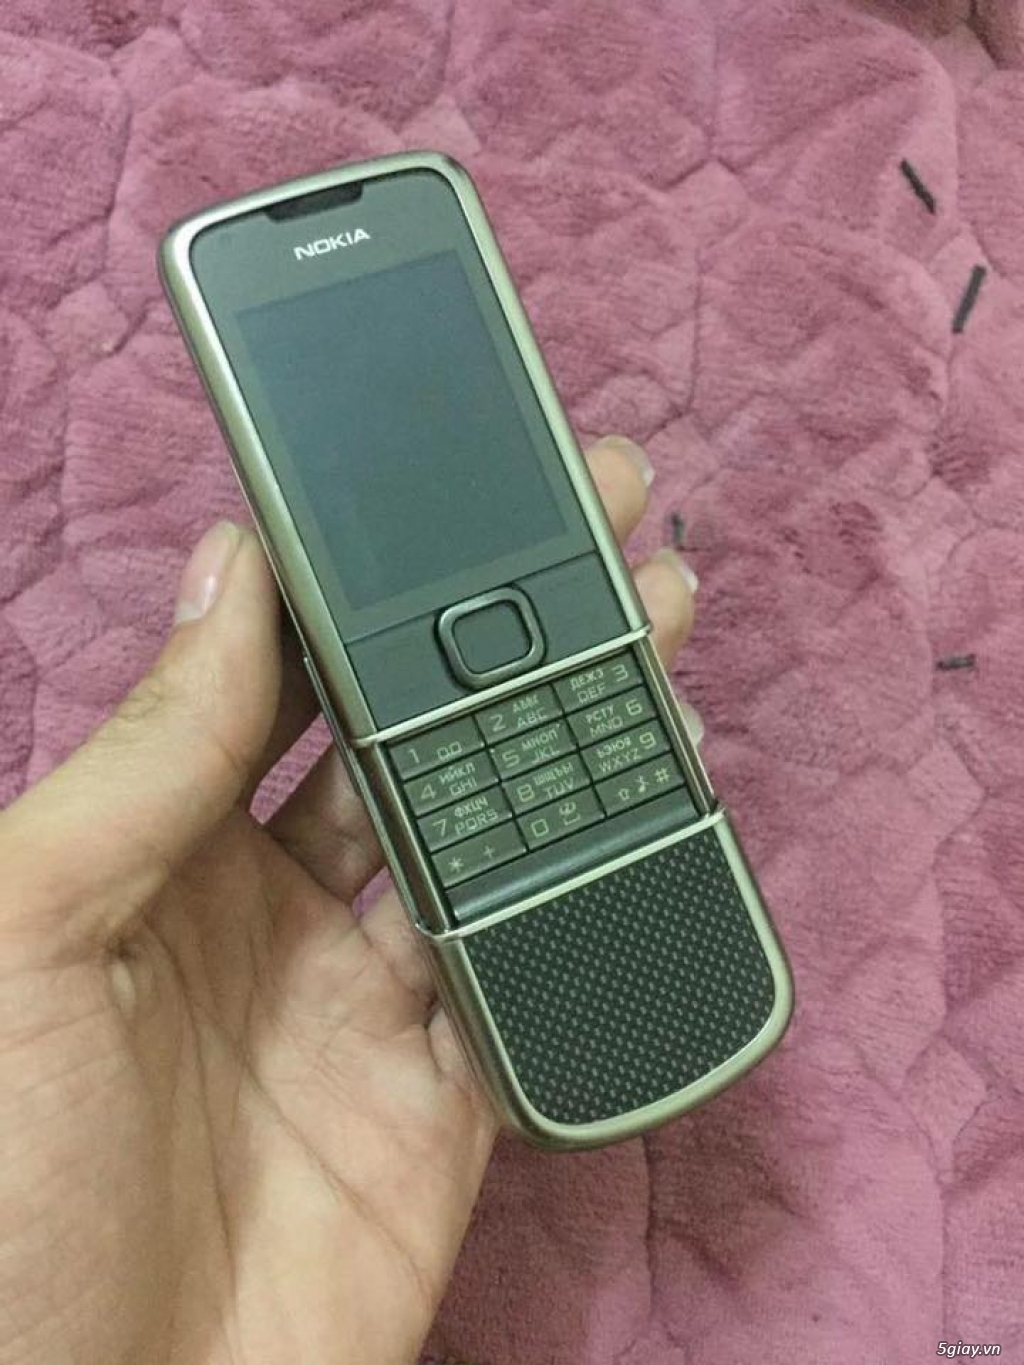 Nokia 8800 e-1 Carbon Arte zin leng keng - 5